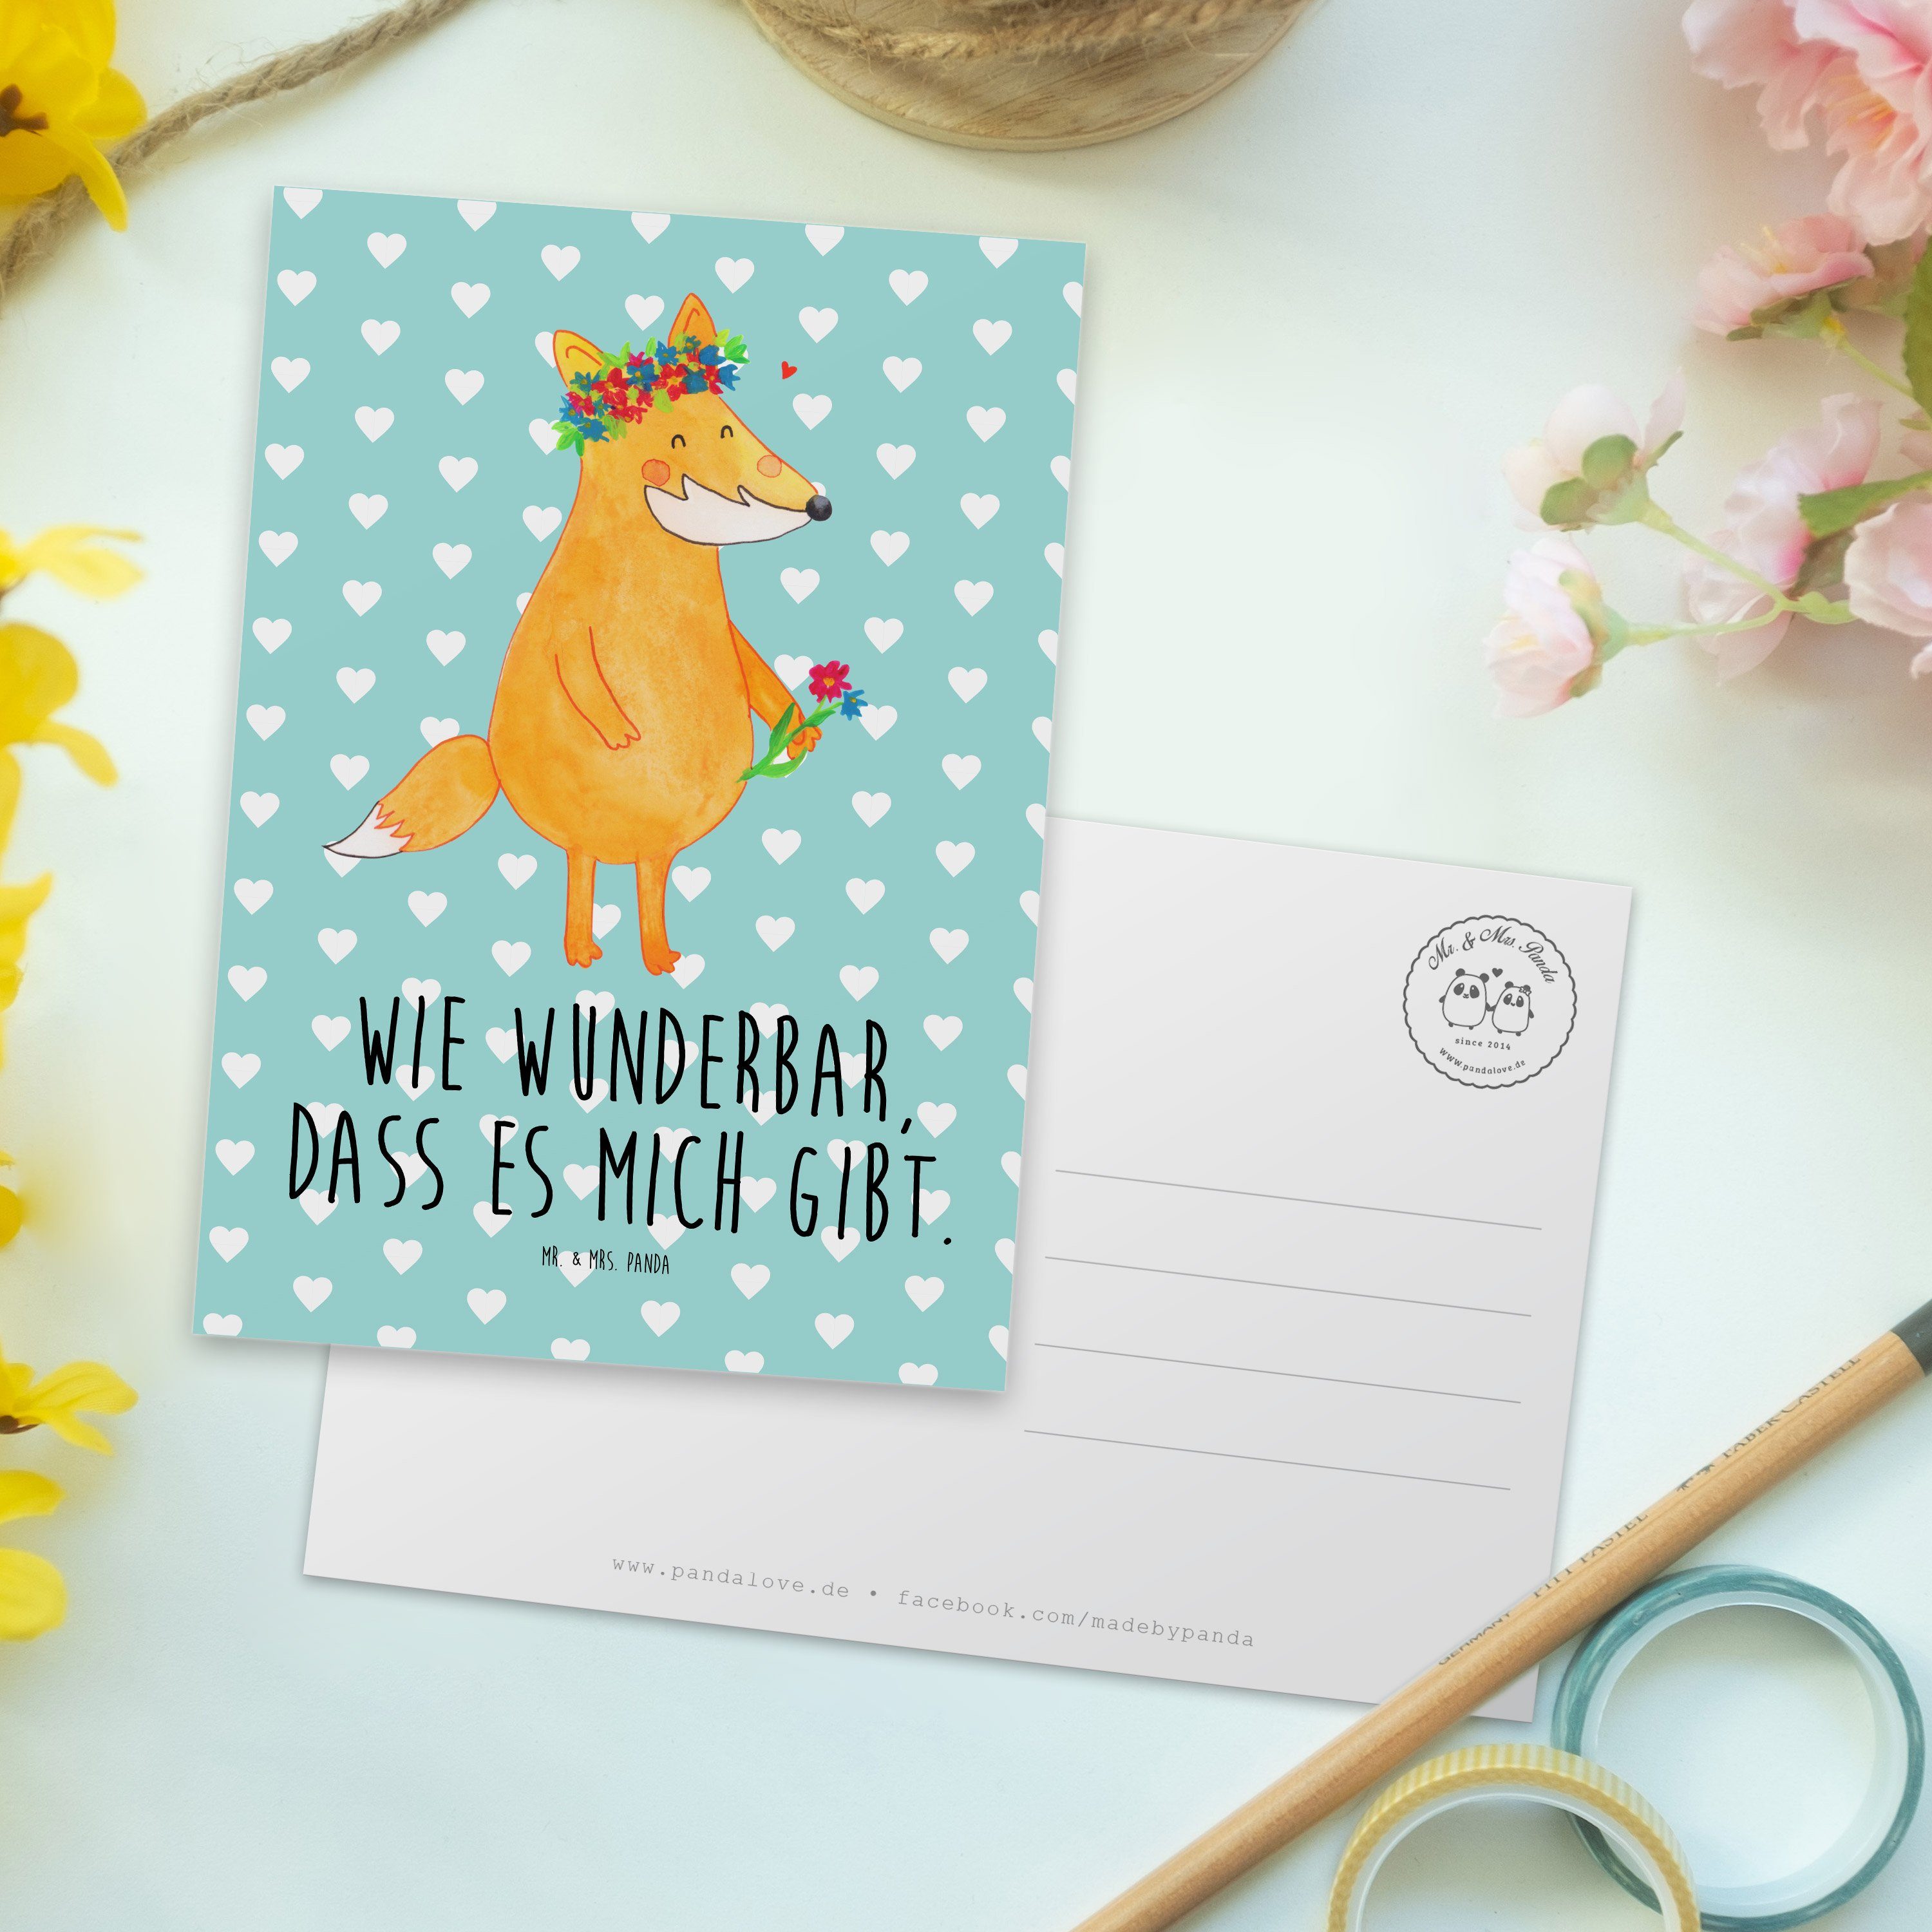 Mr. & Mrs. Panda Postkarte Pastell Türkis Blumenliebe Fuchs Geschenk, - - Einladung, Geburtstags